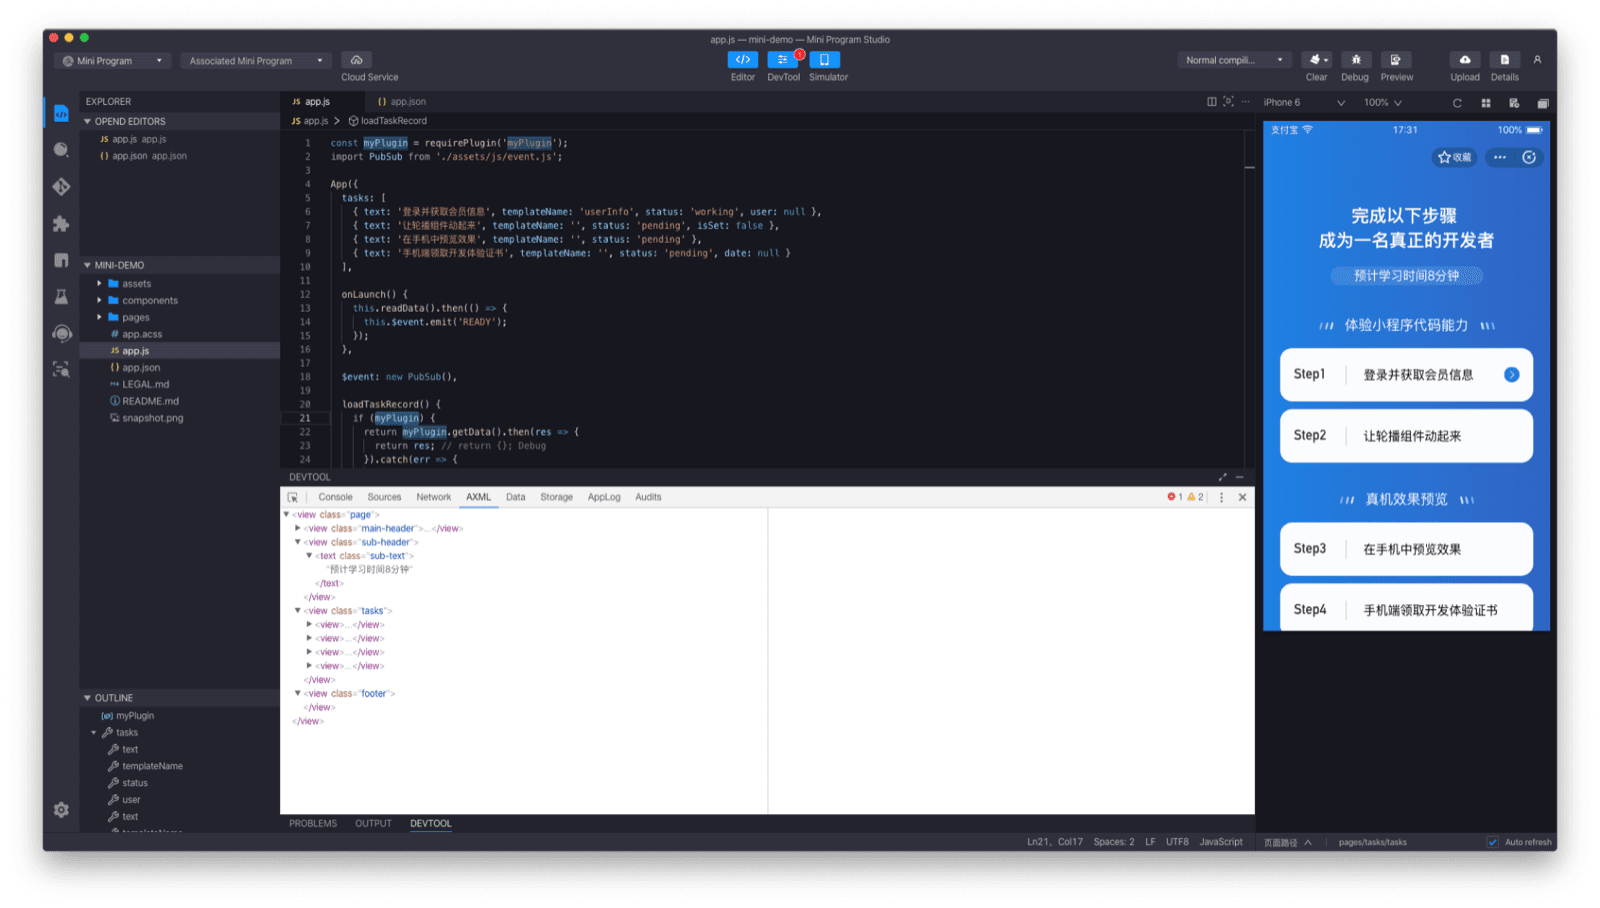 Окно приложения Alipay DevTools, показывающее редактор кода, симулятор и отладчик.